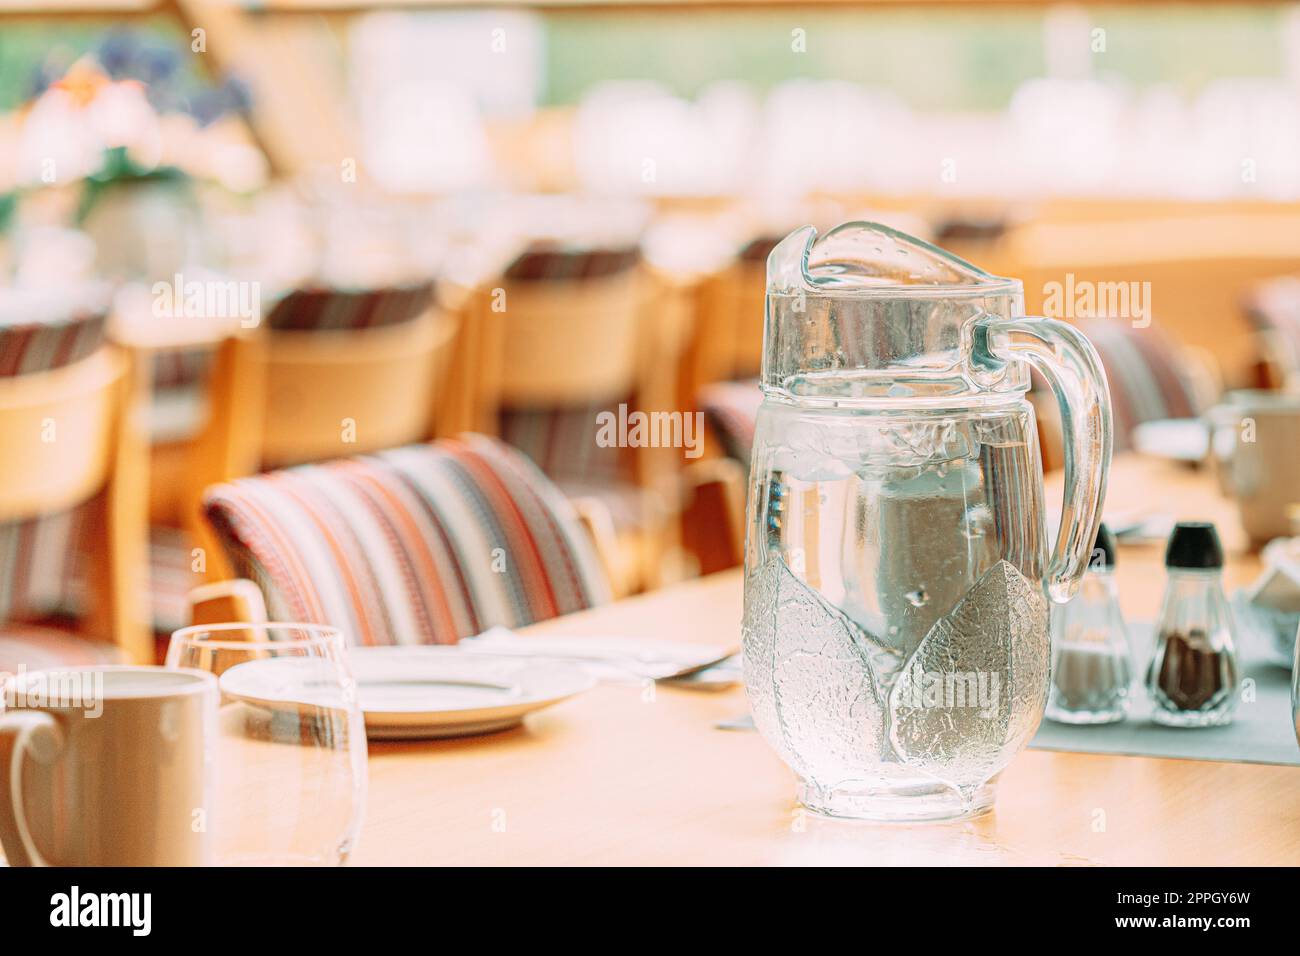 Gemütliches Interieur Des Summer Cafe. Krug Mit Eiskalt Kaltem Eiswasser Auf Dem Tisch Und Besteck Ausgelegt Stockfoto